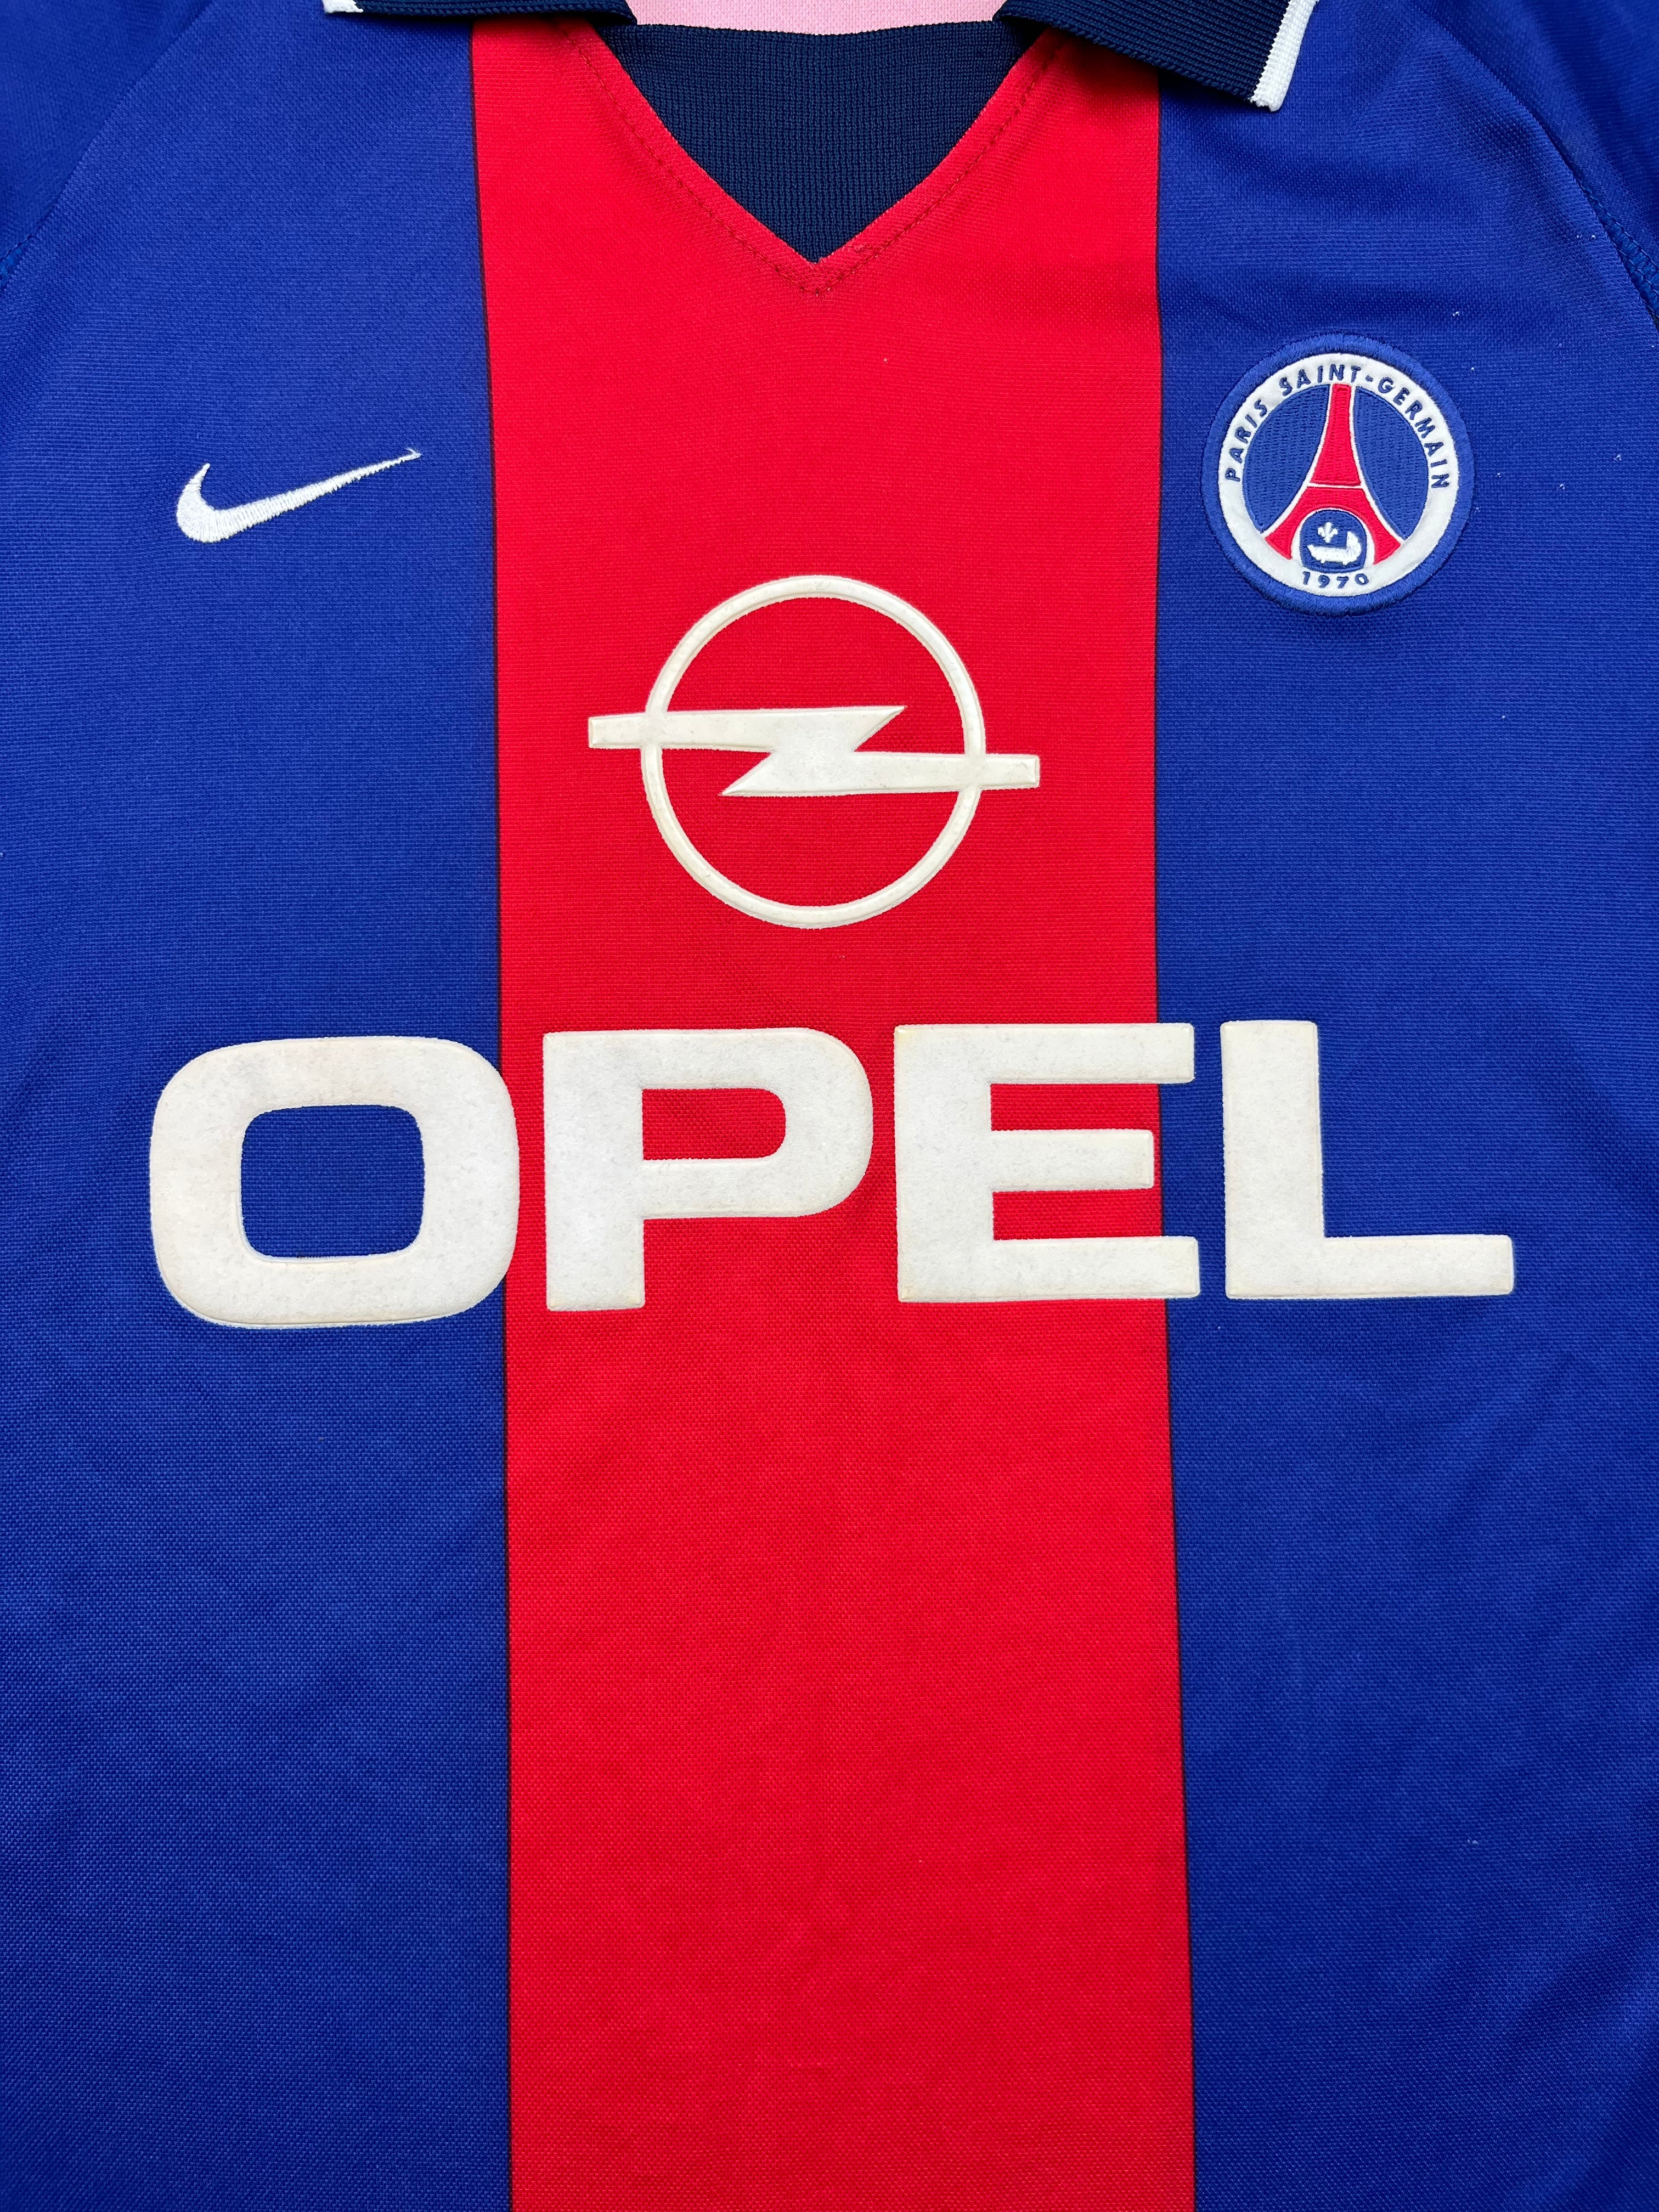 2000/01 Paris Saint-Germain Home Shirt (L) 9/10